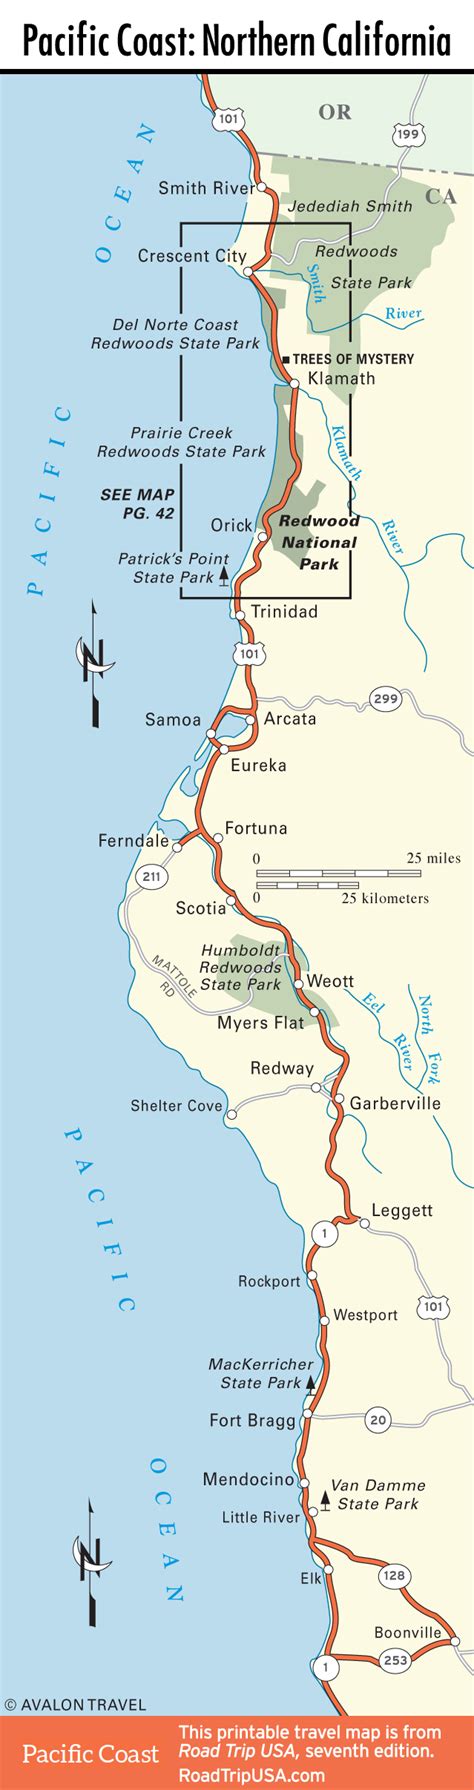 Pacific Coast Route Through California Road Trip Usa